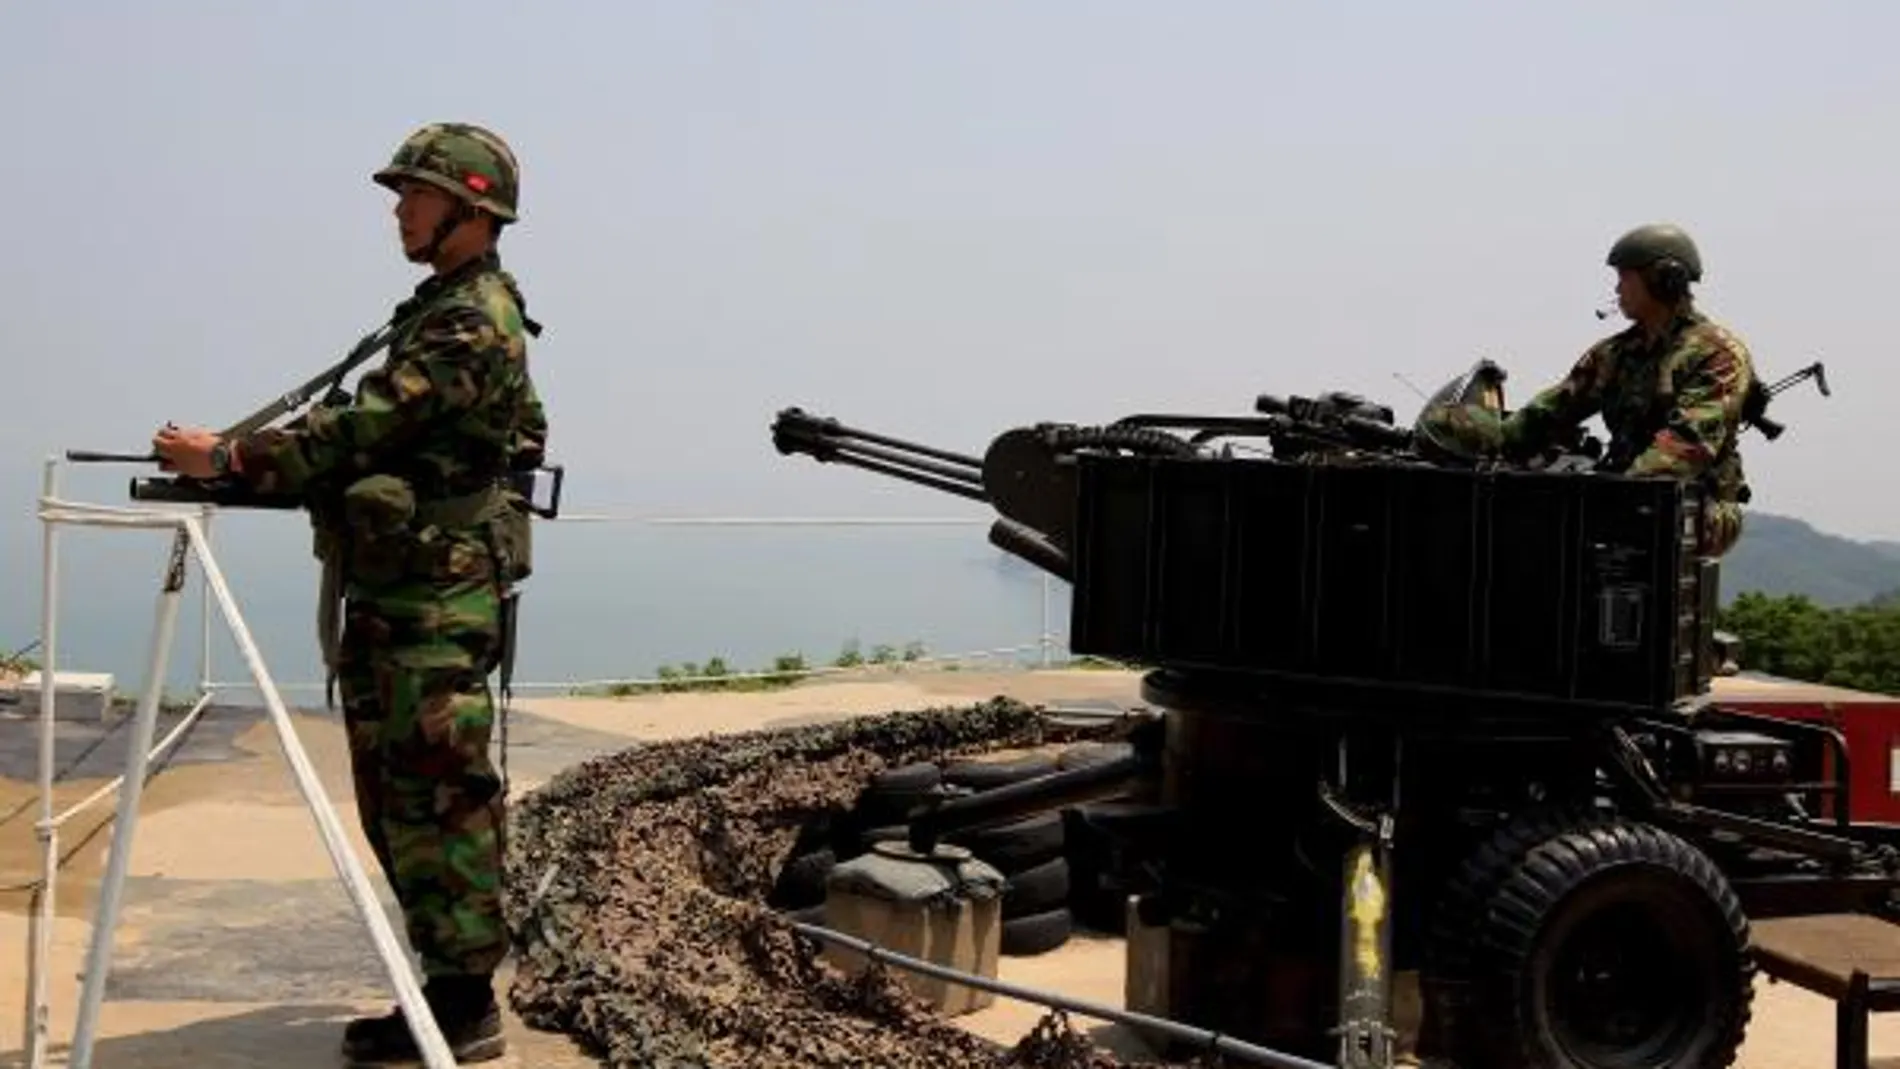 Marines de Corea del Sur defienden la línea costera de la zona desmilitarizada que separa al país de su vecino Corea del Norte en la isla de Yeonpyeong